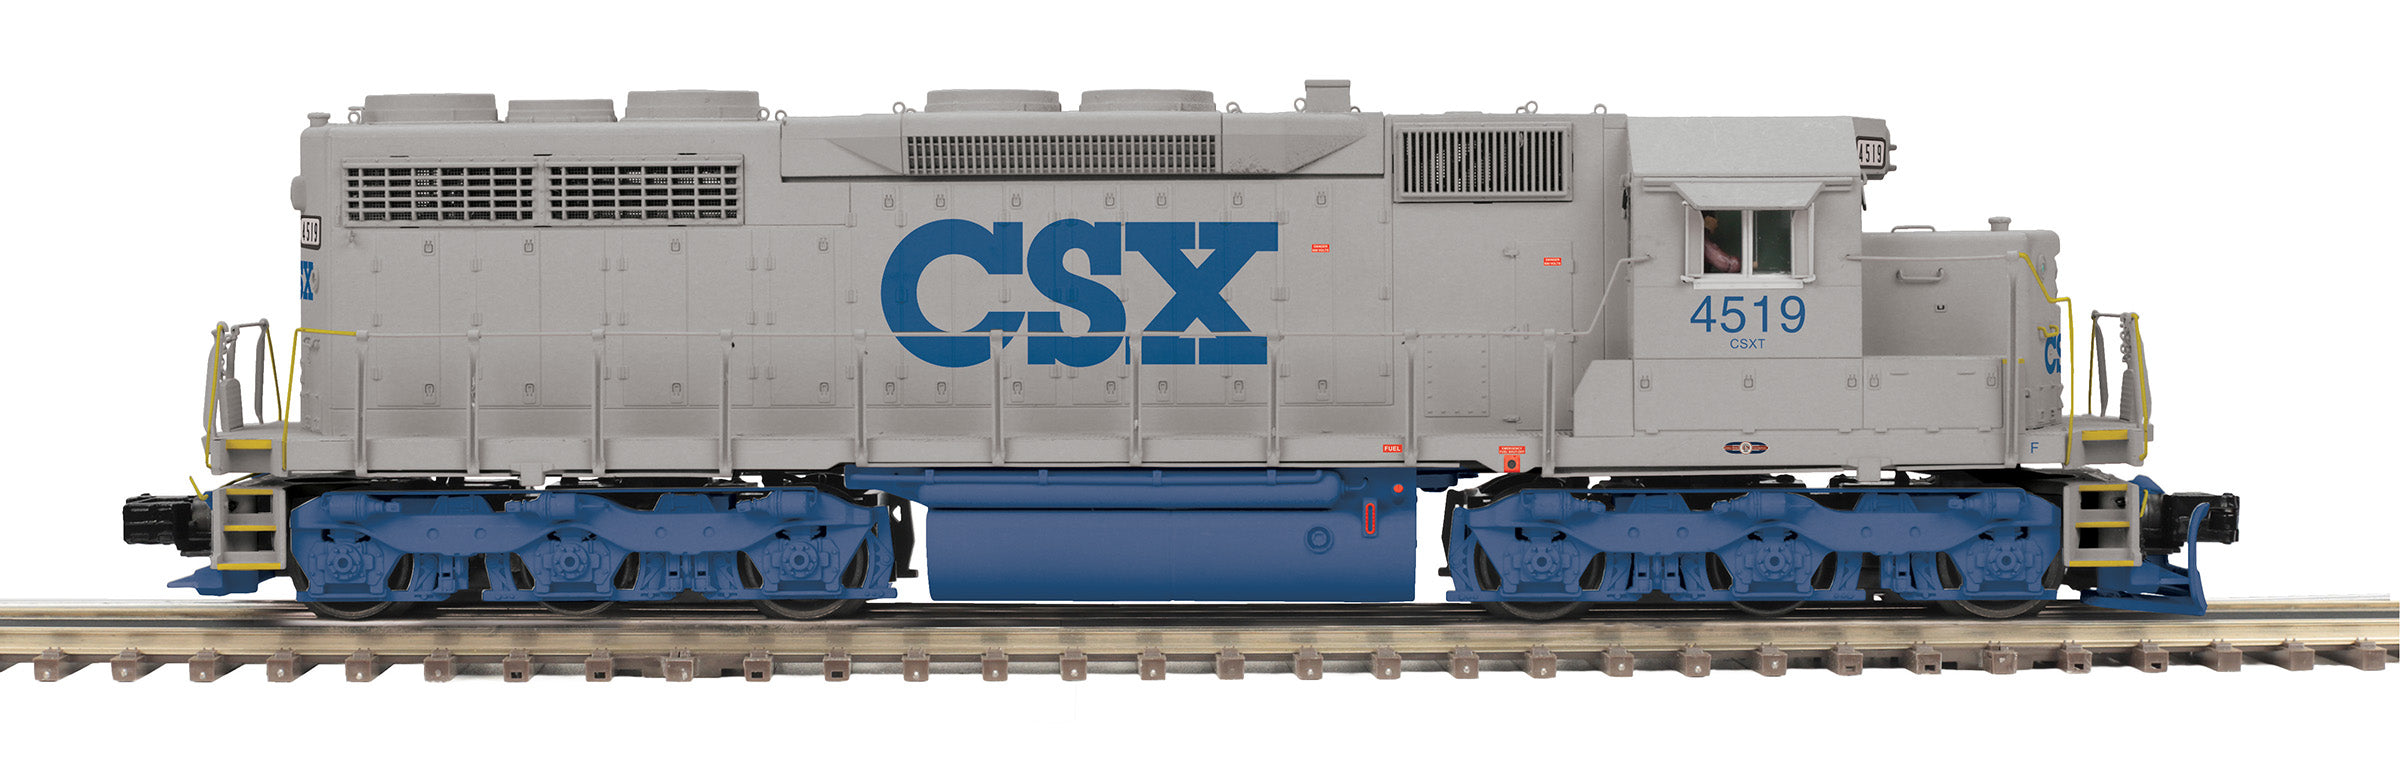 MTH 20-21758-1 - SD-35 Diesel Engine "CSX" #4519 w/ PS3 (Hi-Rail Wheels)